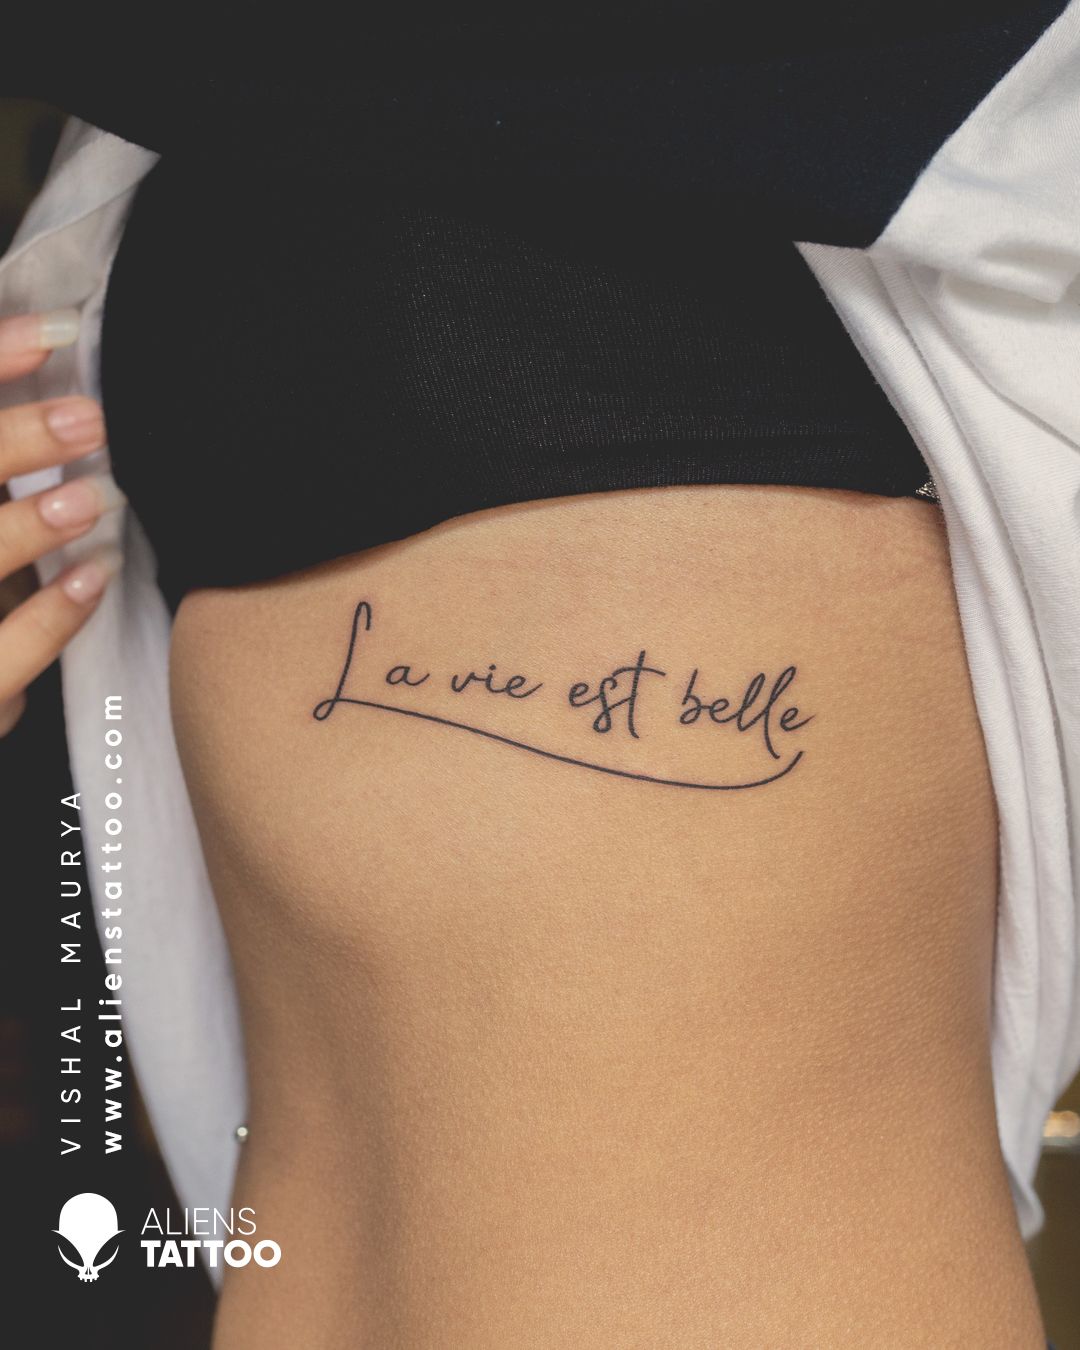 My First Tattoo ☝ | Tattoo quotes, Tattoos, Trendy tattoos